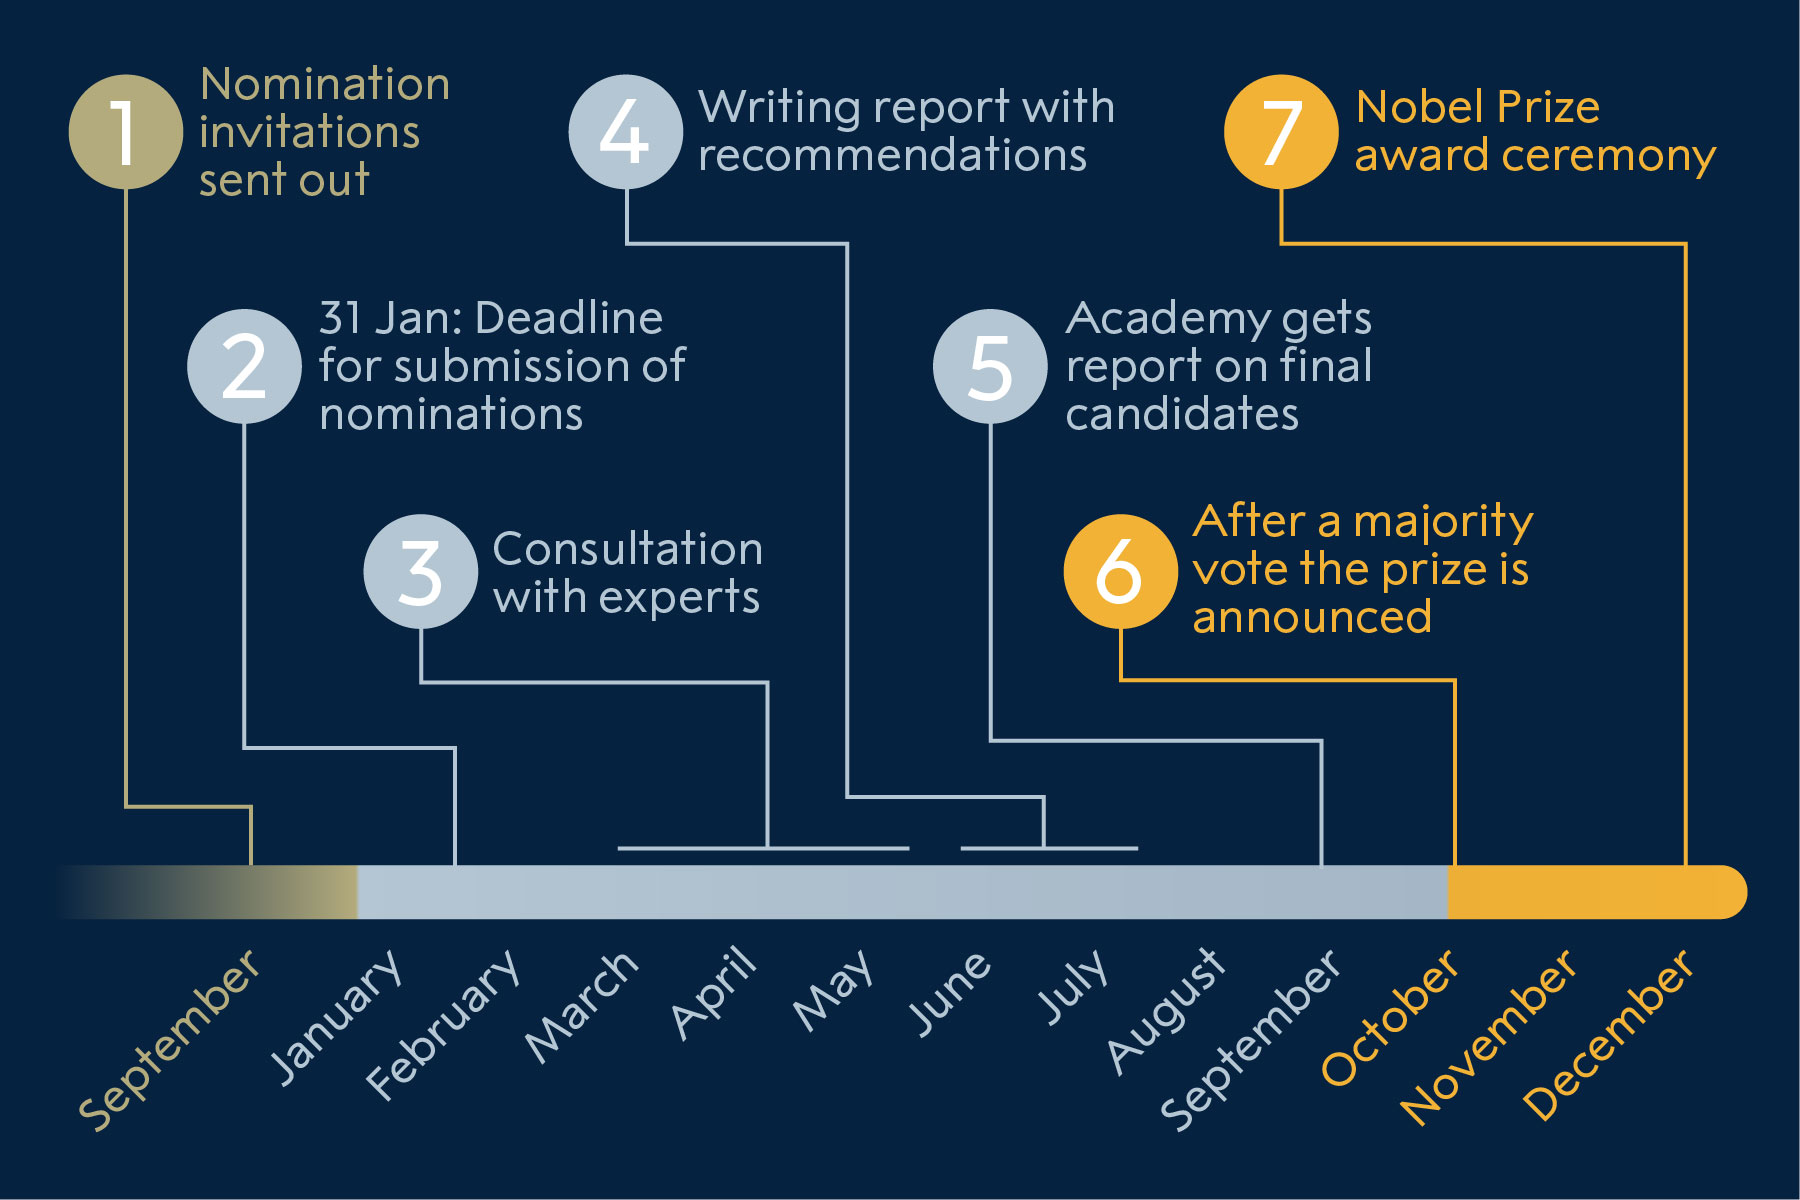 manbet手机版诺贝尔经济学奖的提名过程